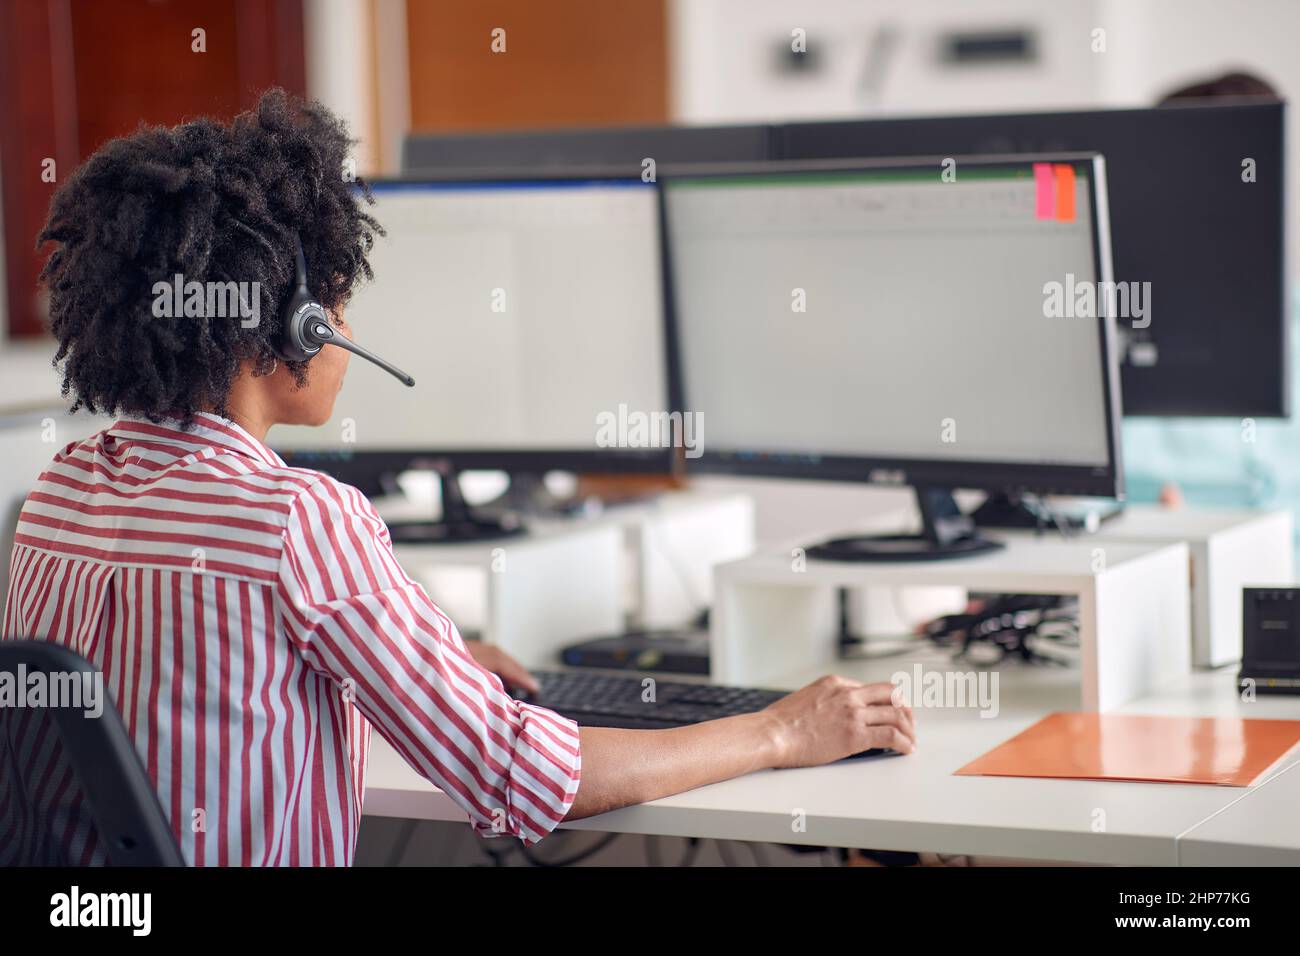 Une jeune femme se concentre sur un travail à l'ordinateur dans une atmosphère agréable au bureau. Employés, travail, bureau Banque D'Images